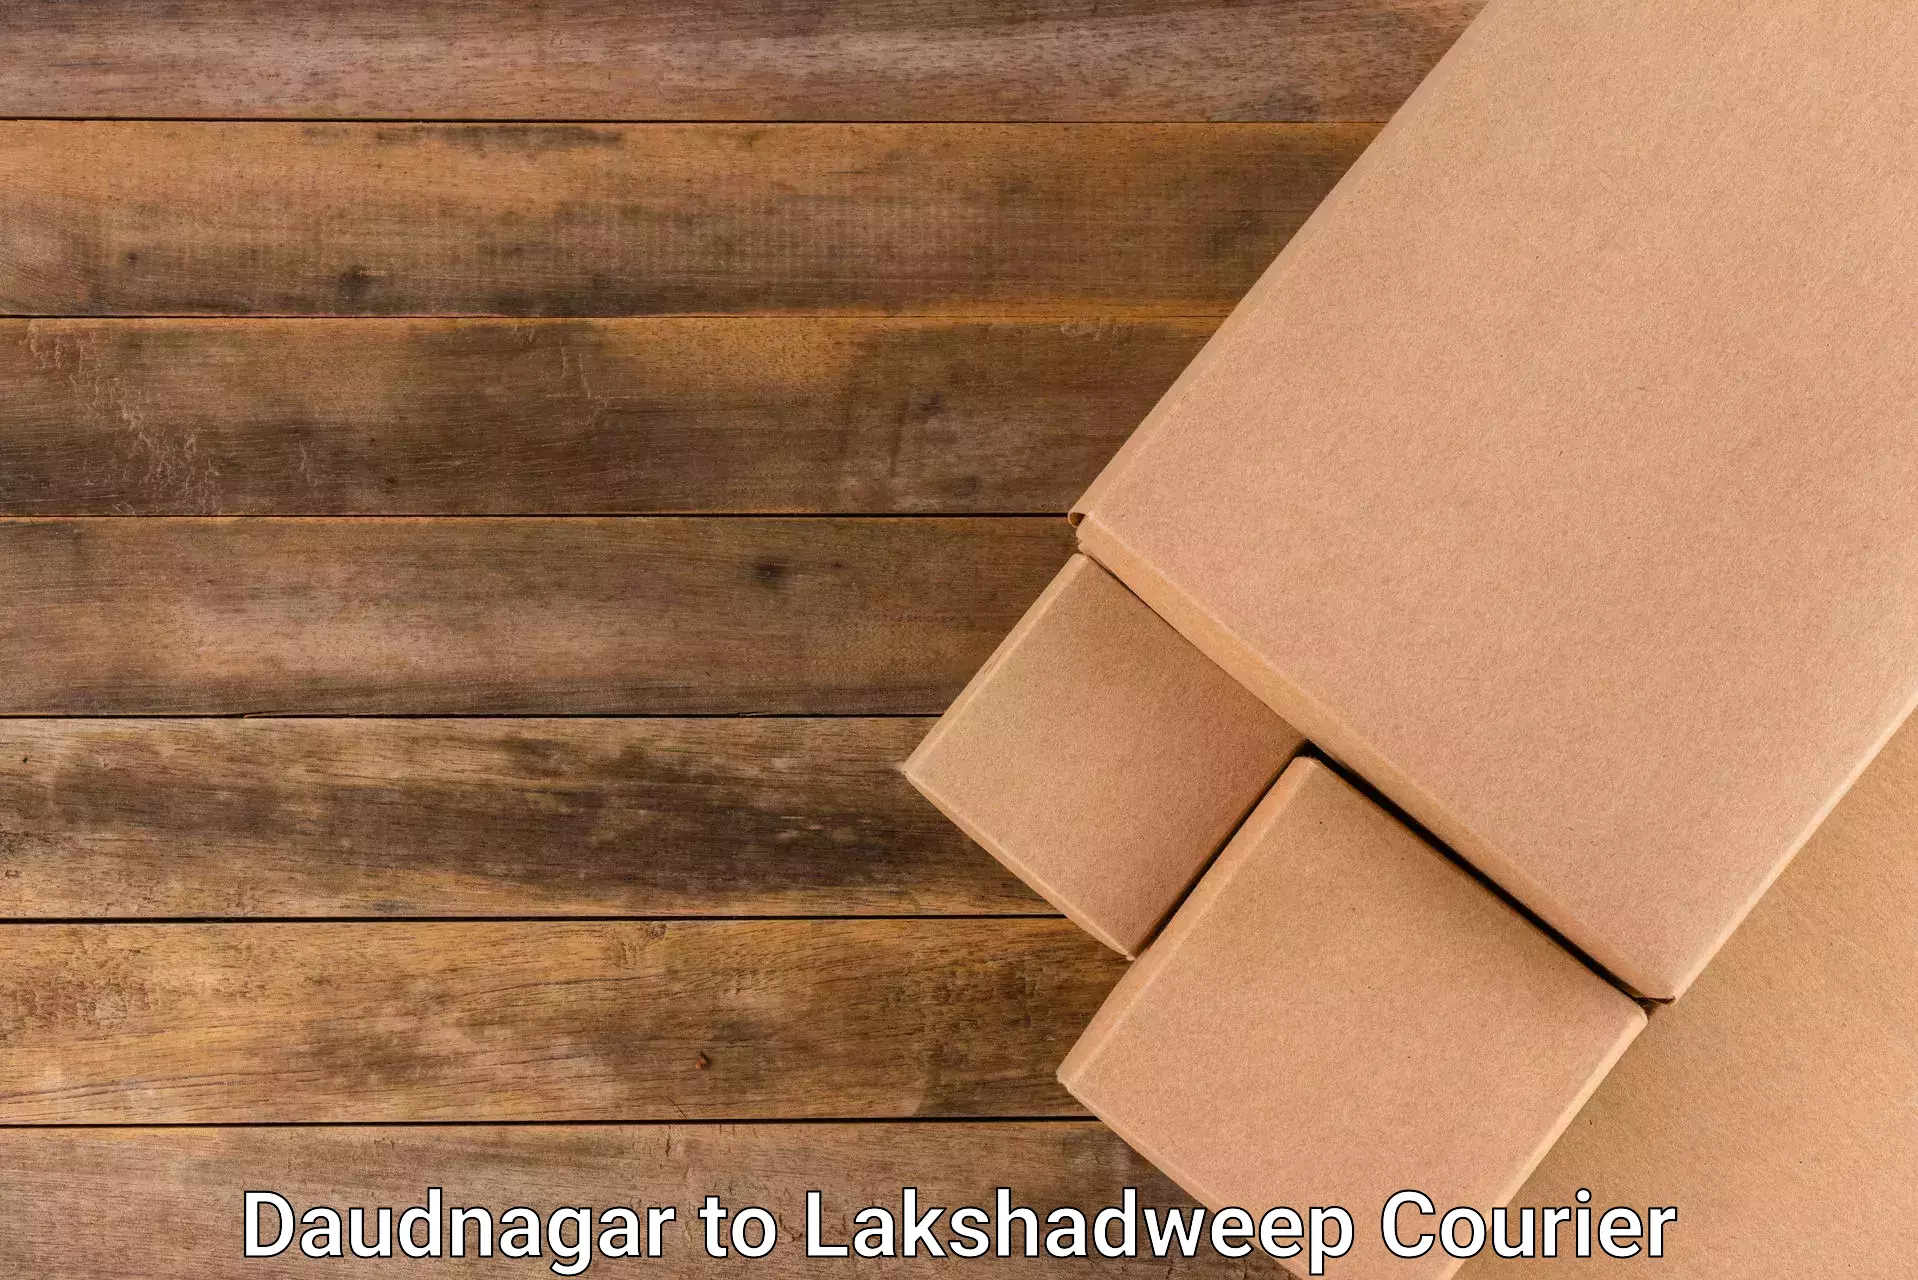 Fast-track shipping solutions Daudnagar to Lakshadweep